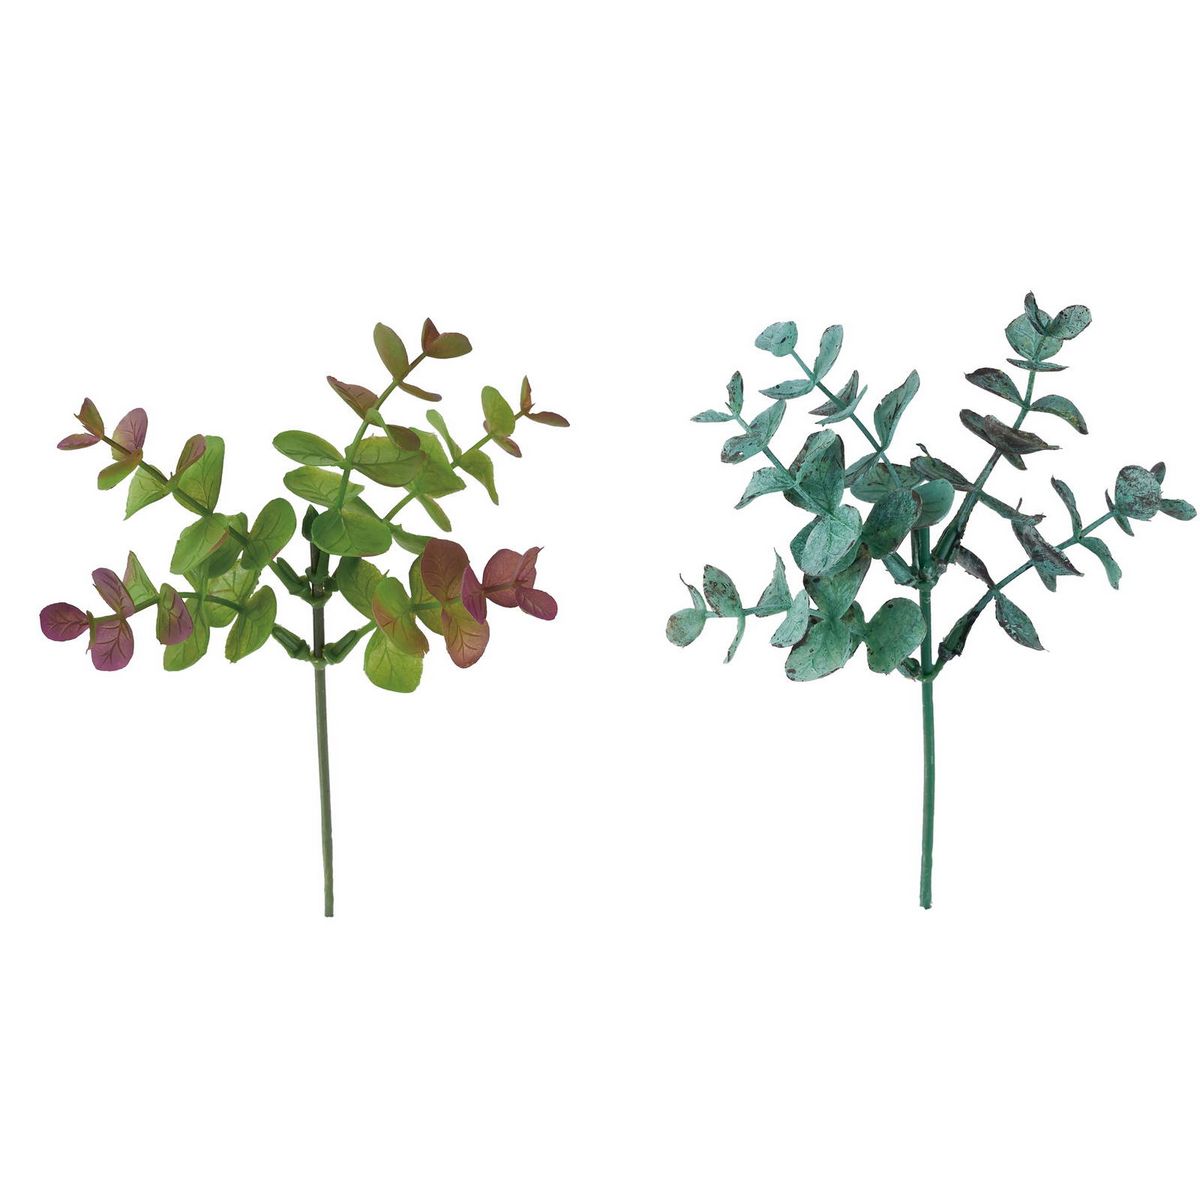 YDM/テーブルフラワーユーカリ アソート ※2種類のいずれか1つ。お選びいただけません。/FG-5143AST 造花（アーティフィシャルフラワー） 造花葉物、フェイクグリーン ユーカリ